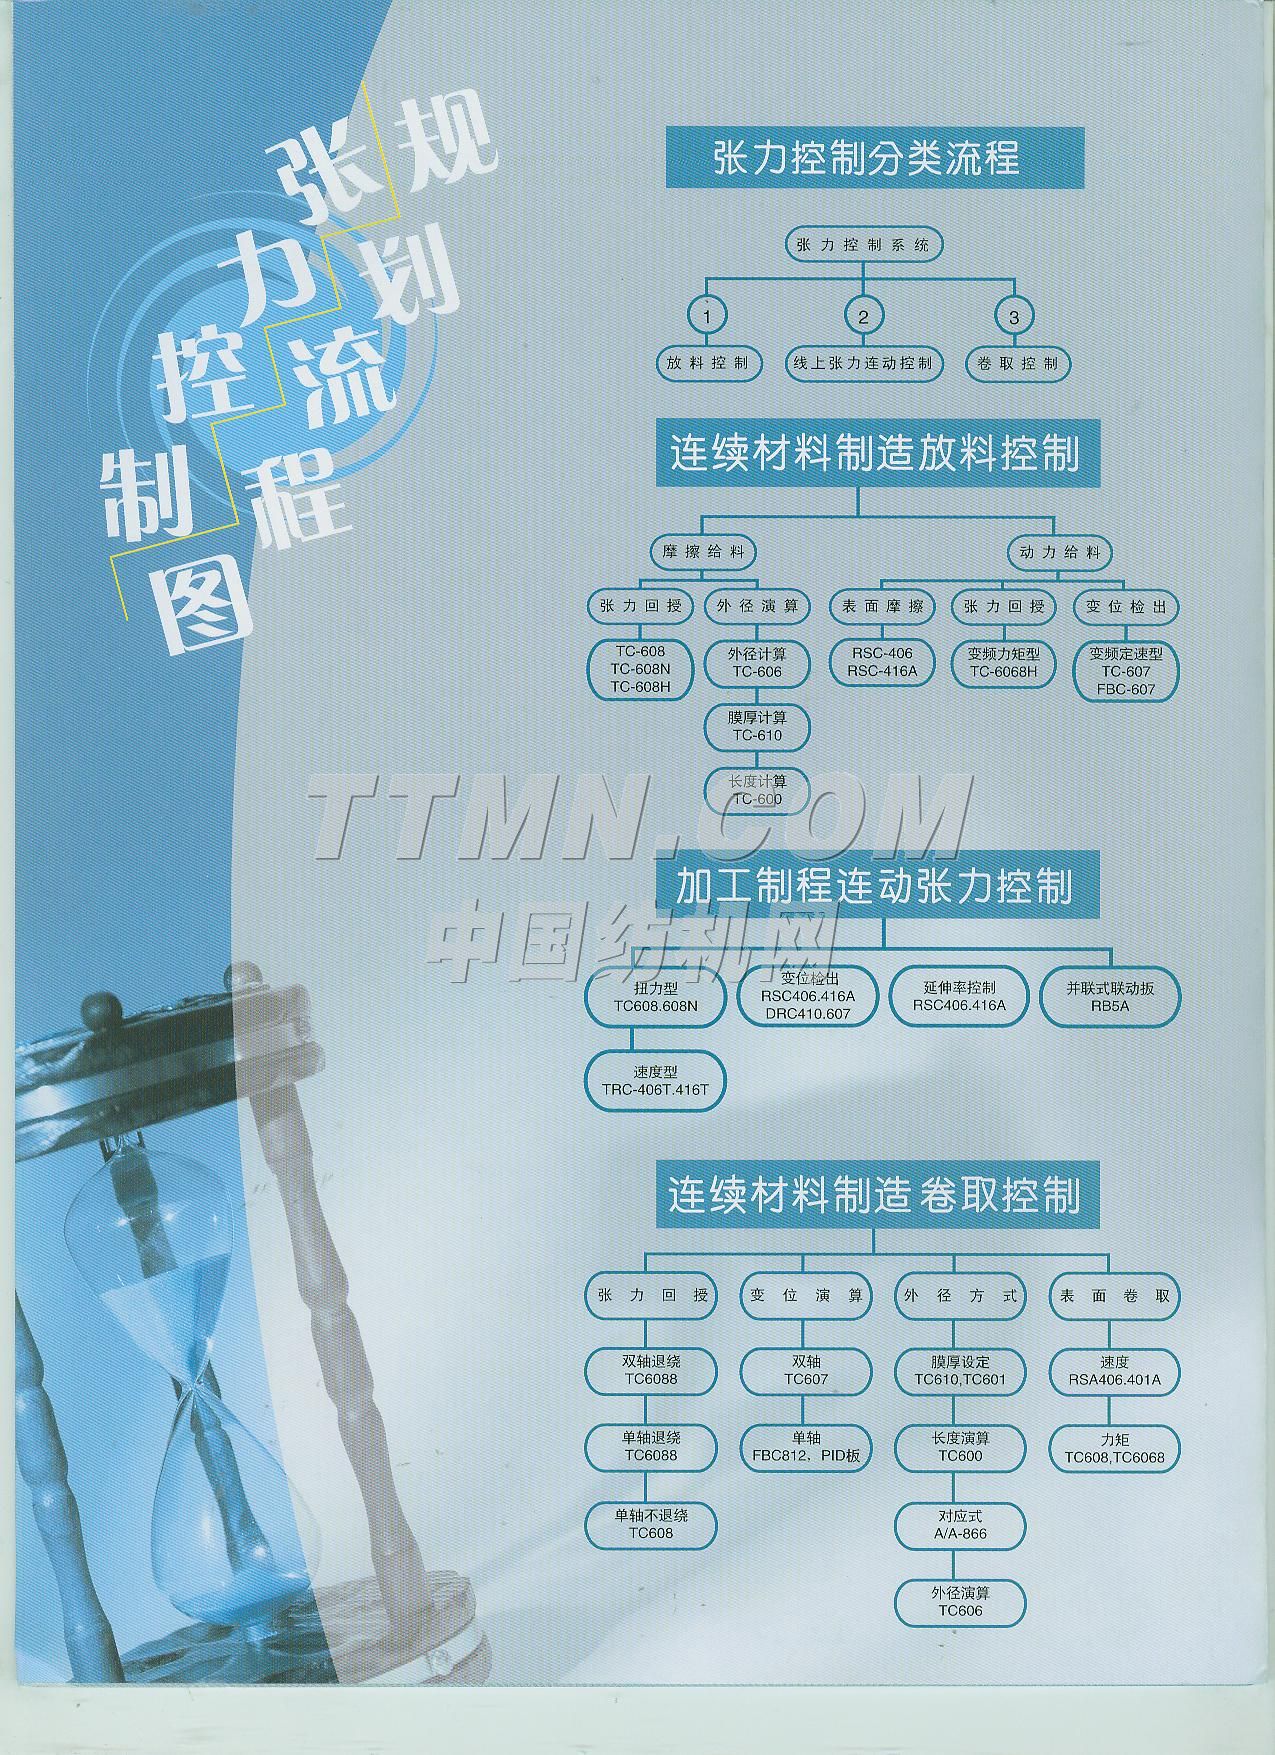 上海宇廷电工系统有限公司